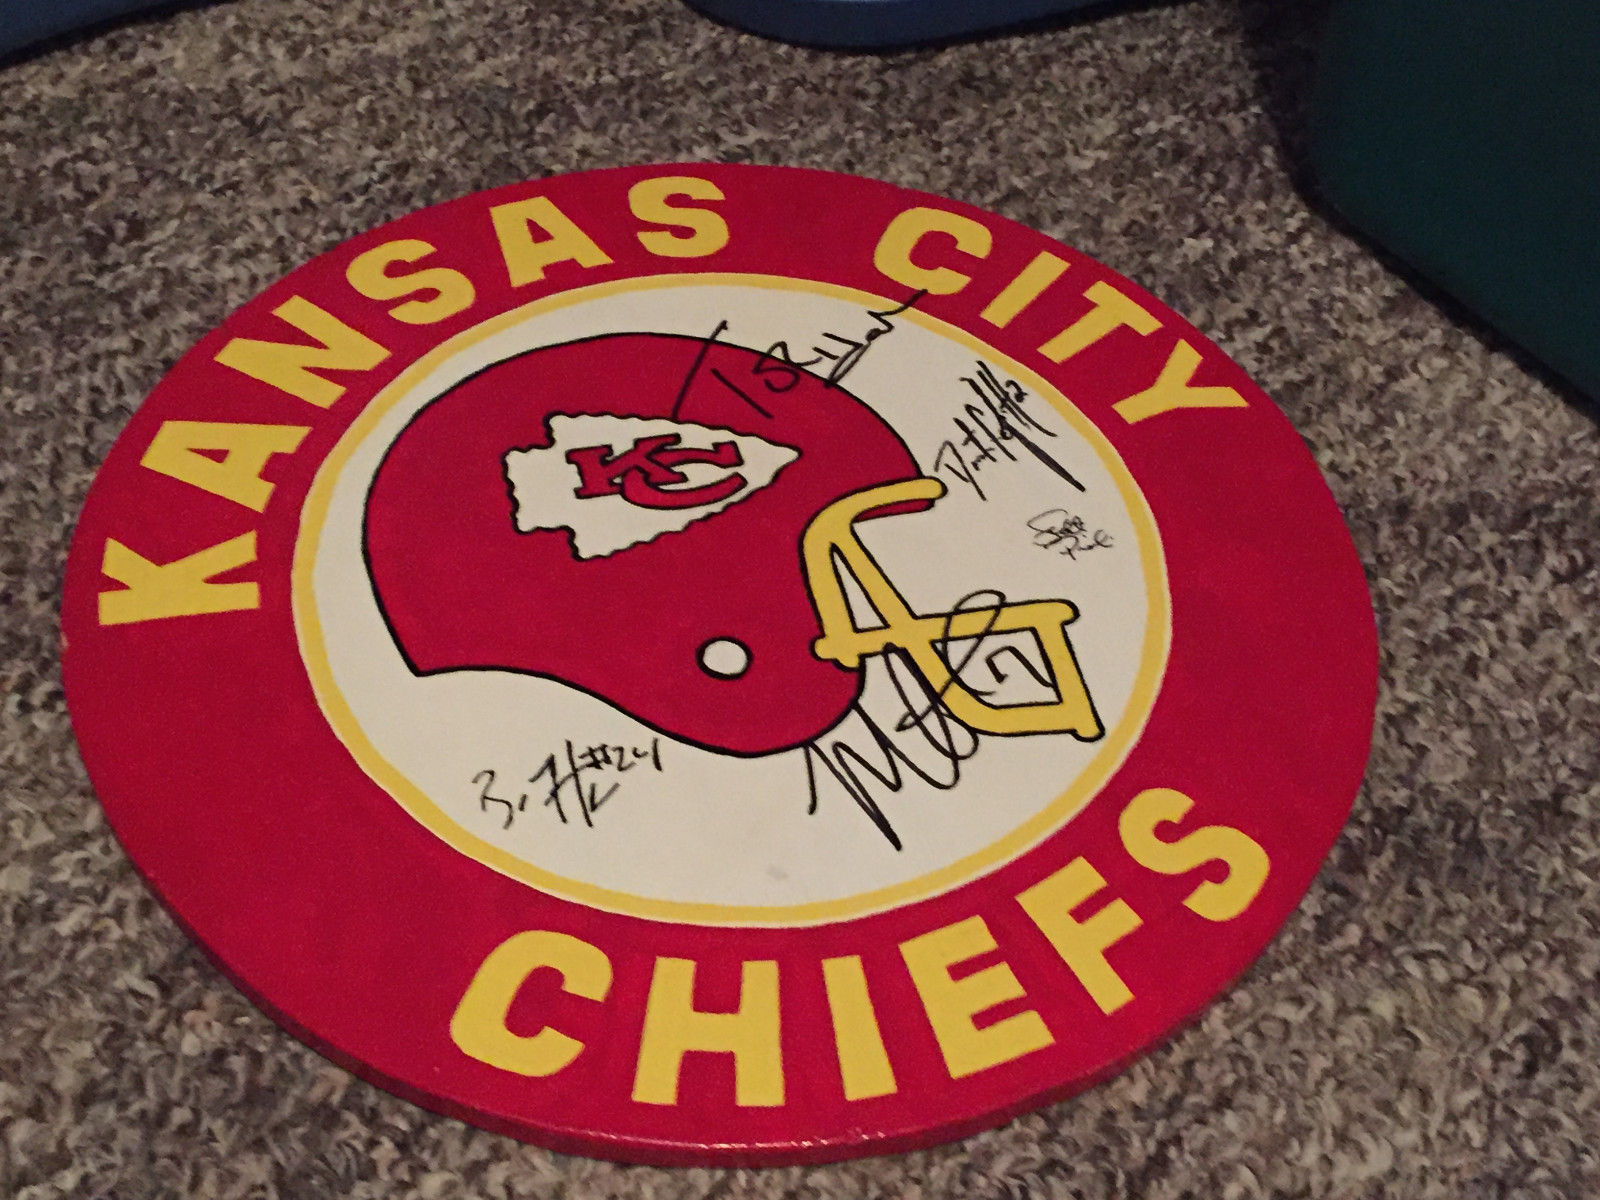 Kansas City Chiefs Memorabilia - including autographs